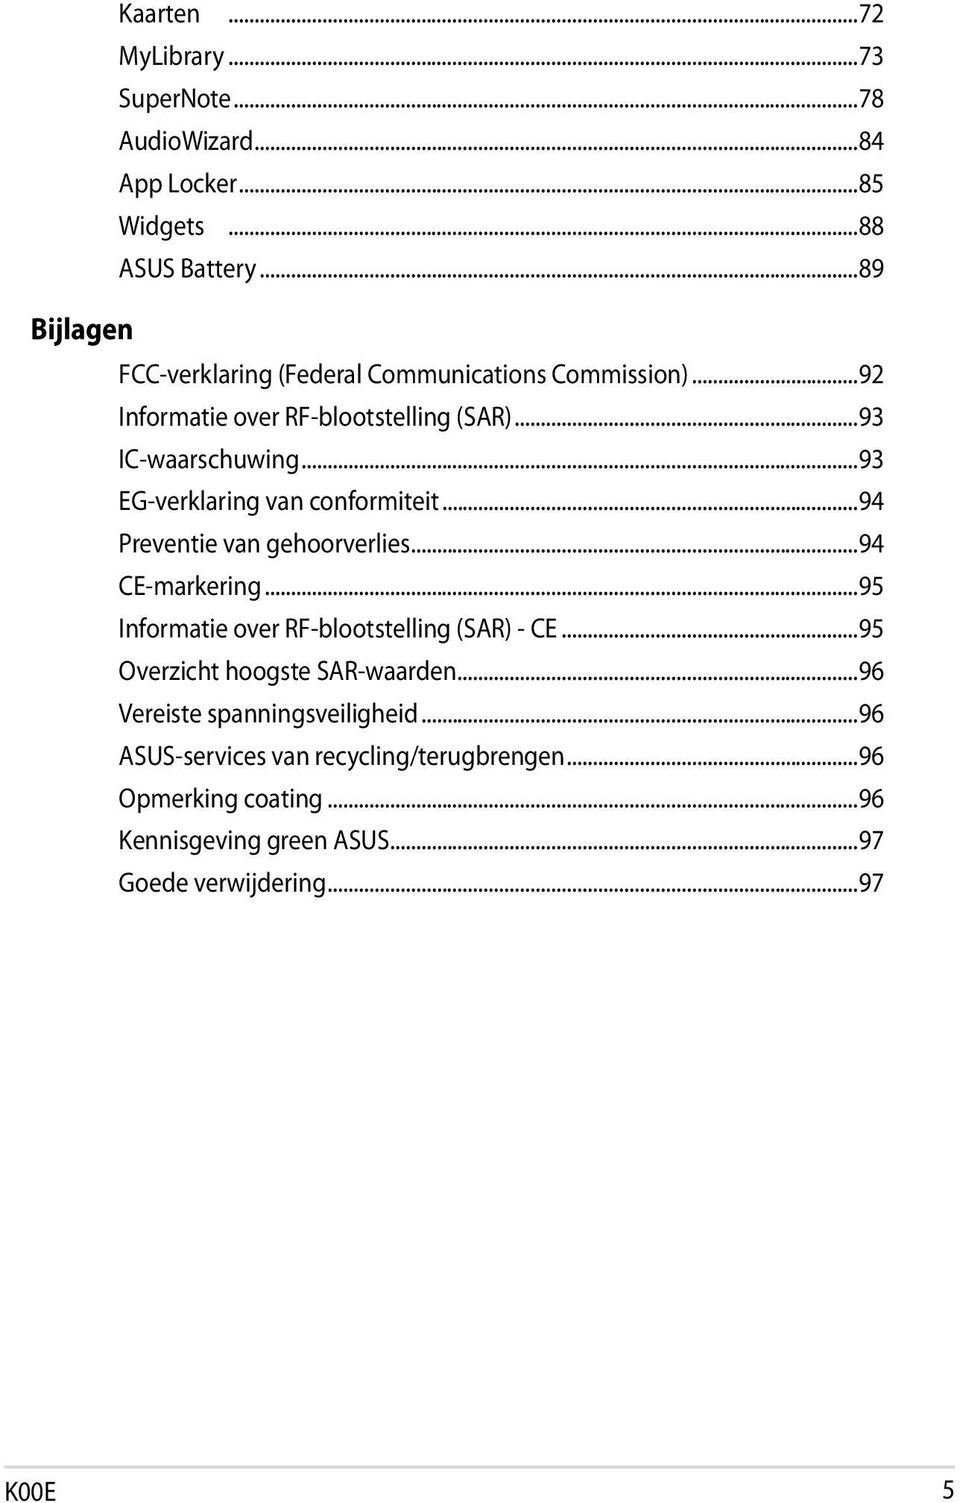 ..93 EG-verklaring van conformiteit...94 Preventie van gehoorverlies...94 CE-markering...95 Informatie over RF-blootstelling (SAR) - CE.